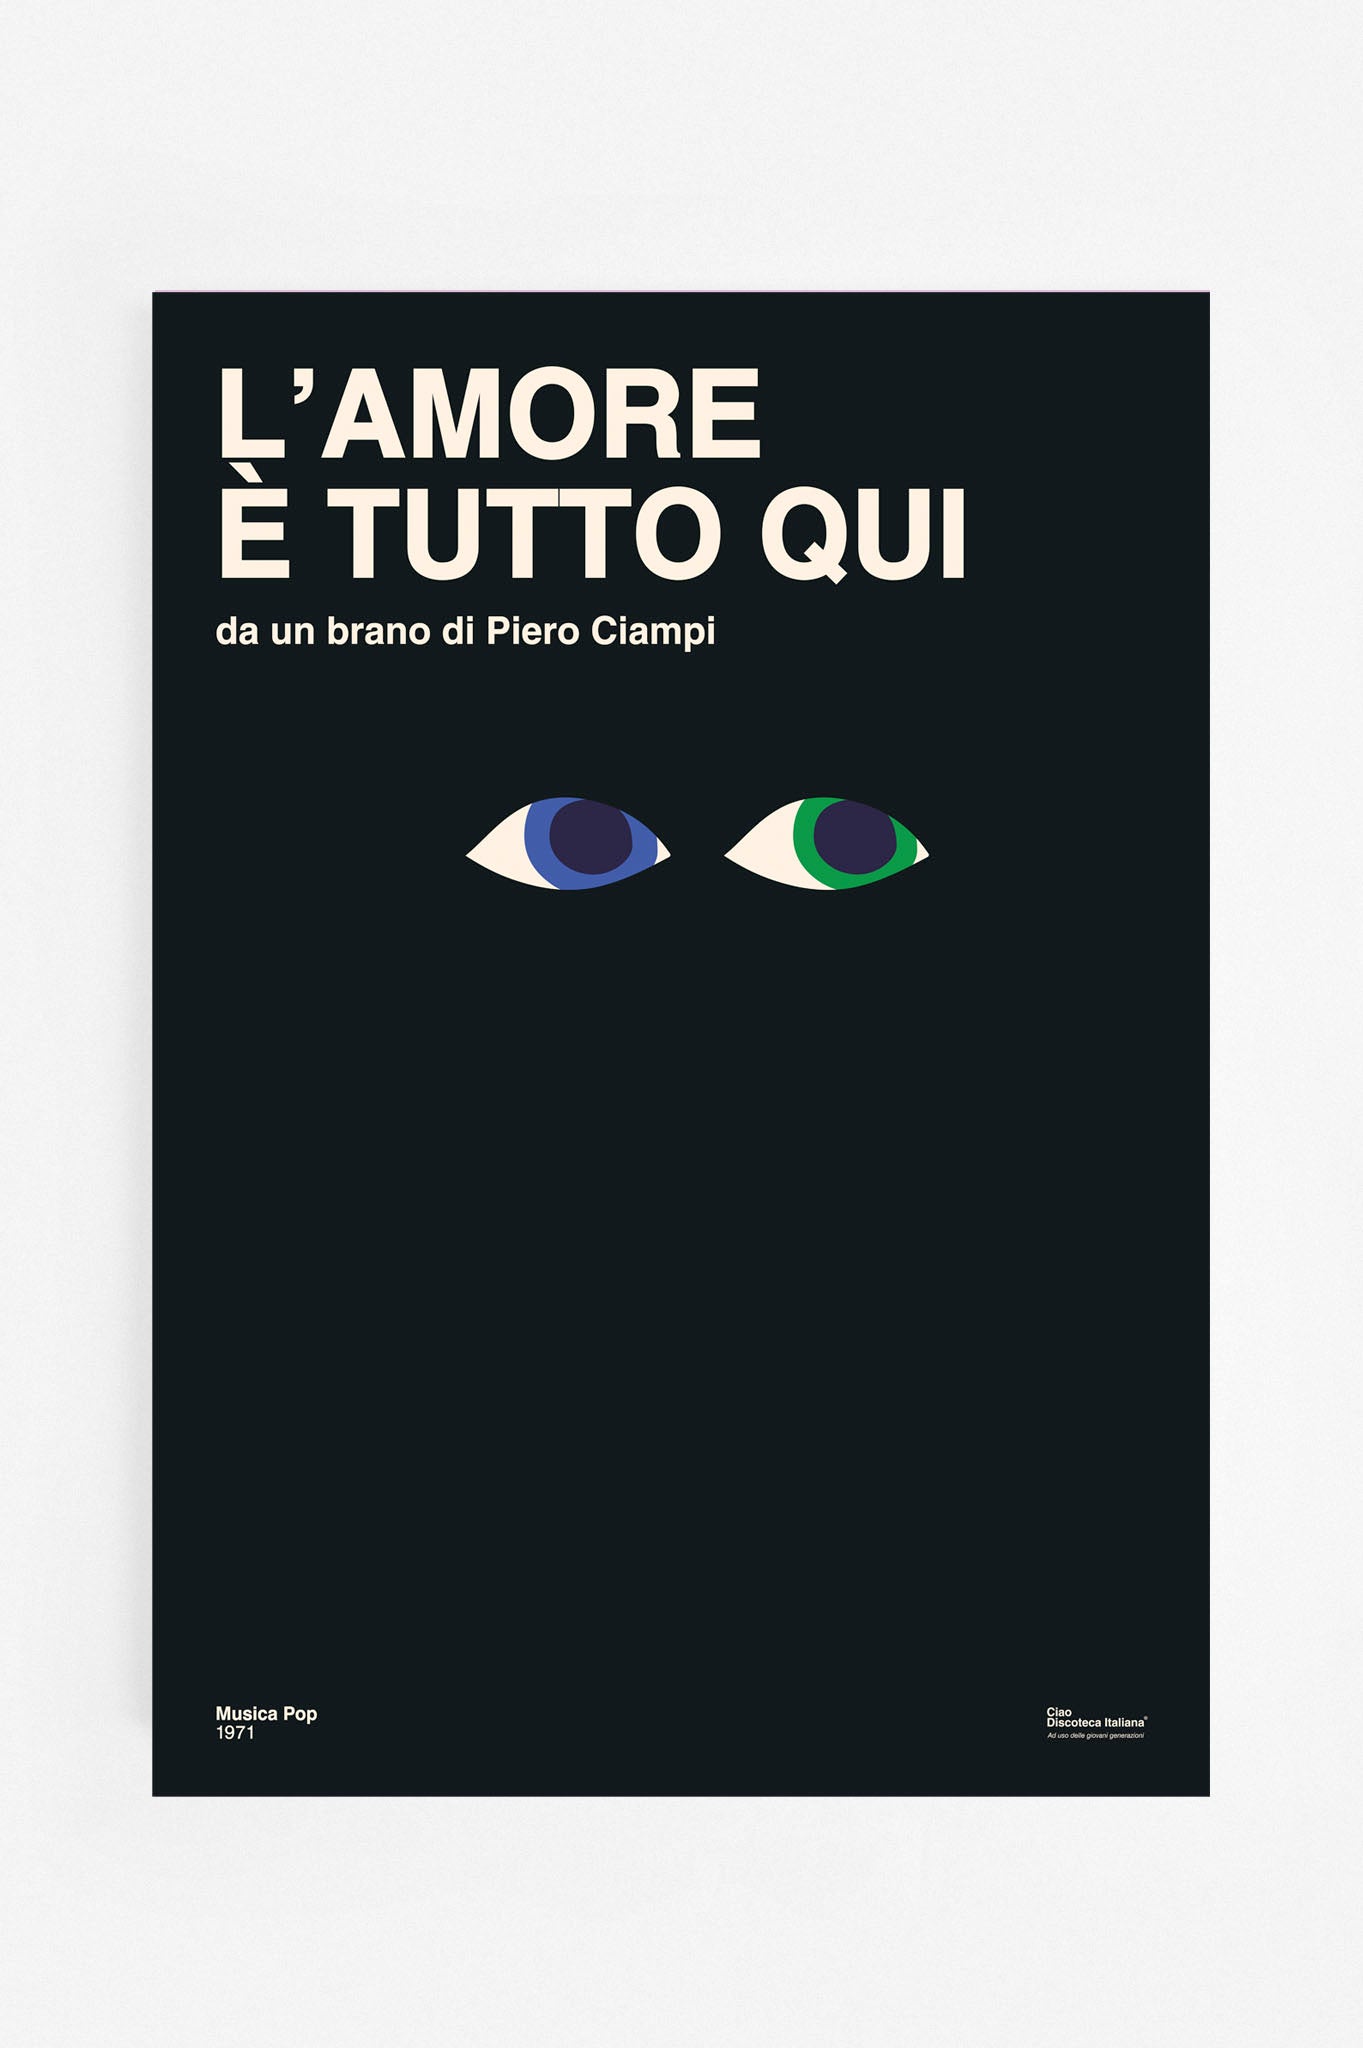 Poster L'amore è tutto qui, Pietro Ciampi manifesto